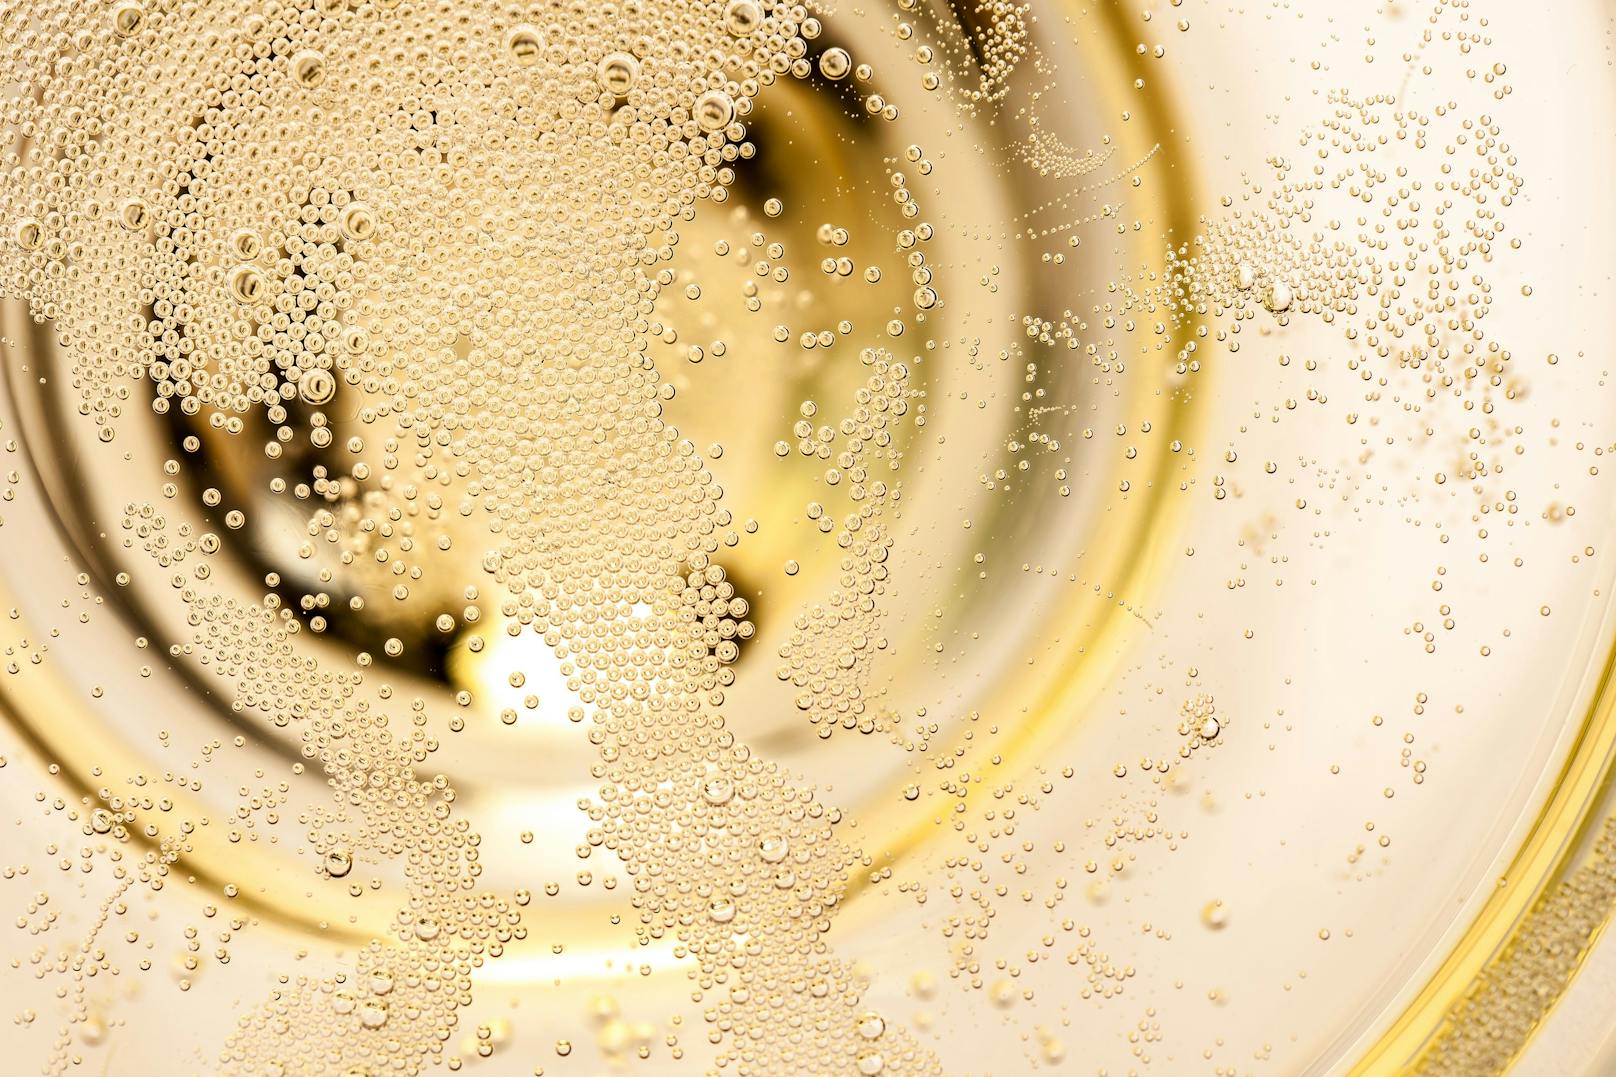 <strong>Tipp 5: Der richtige Zeitpunkt! </strong>Champagner passt grundsätzlich an 365 Tagen im Jahr, aber natürlich besonders zum Jahresausklang!